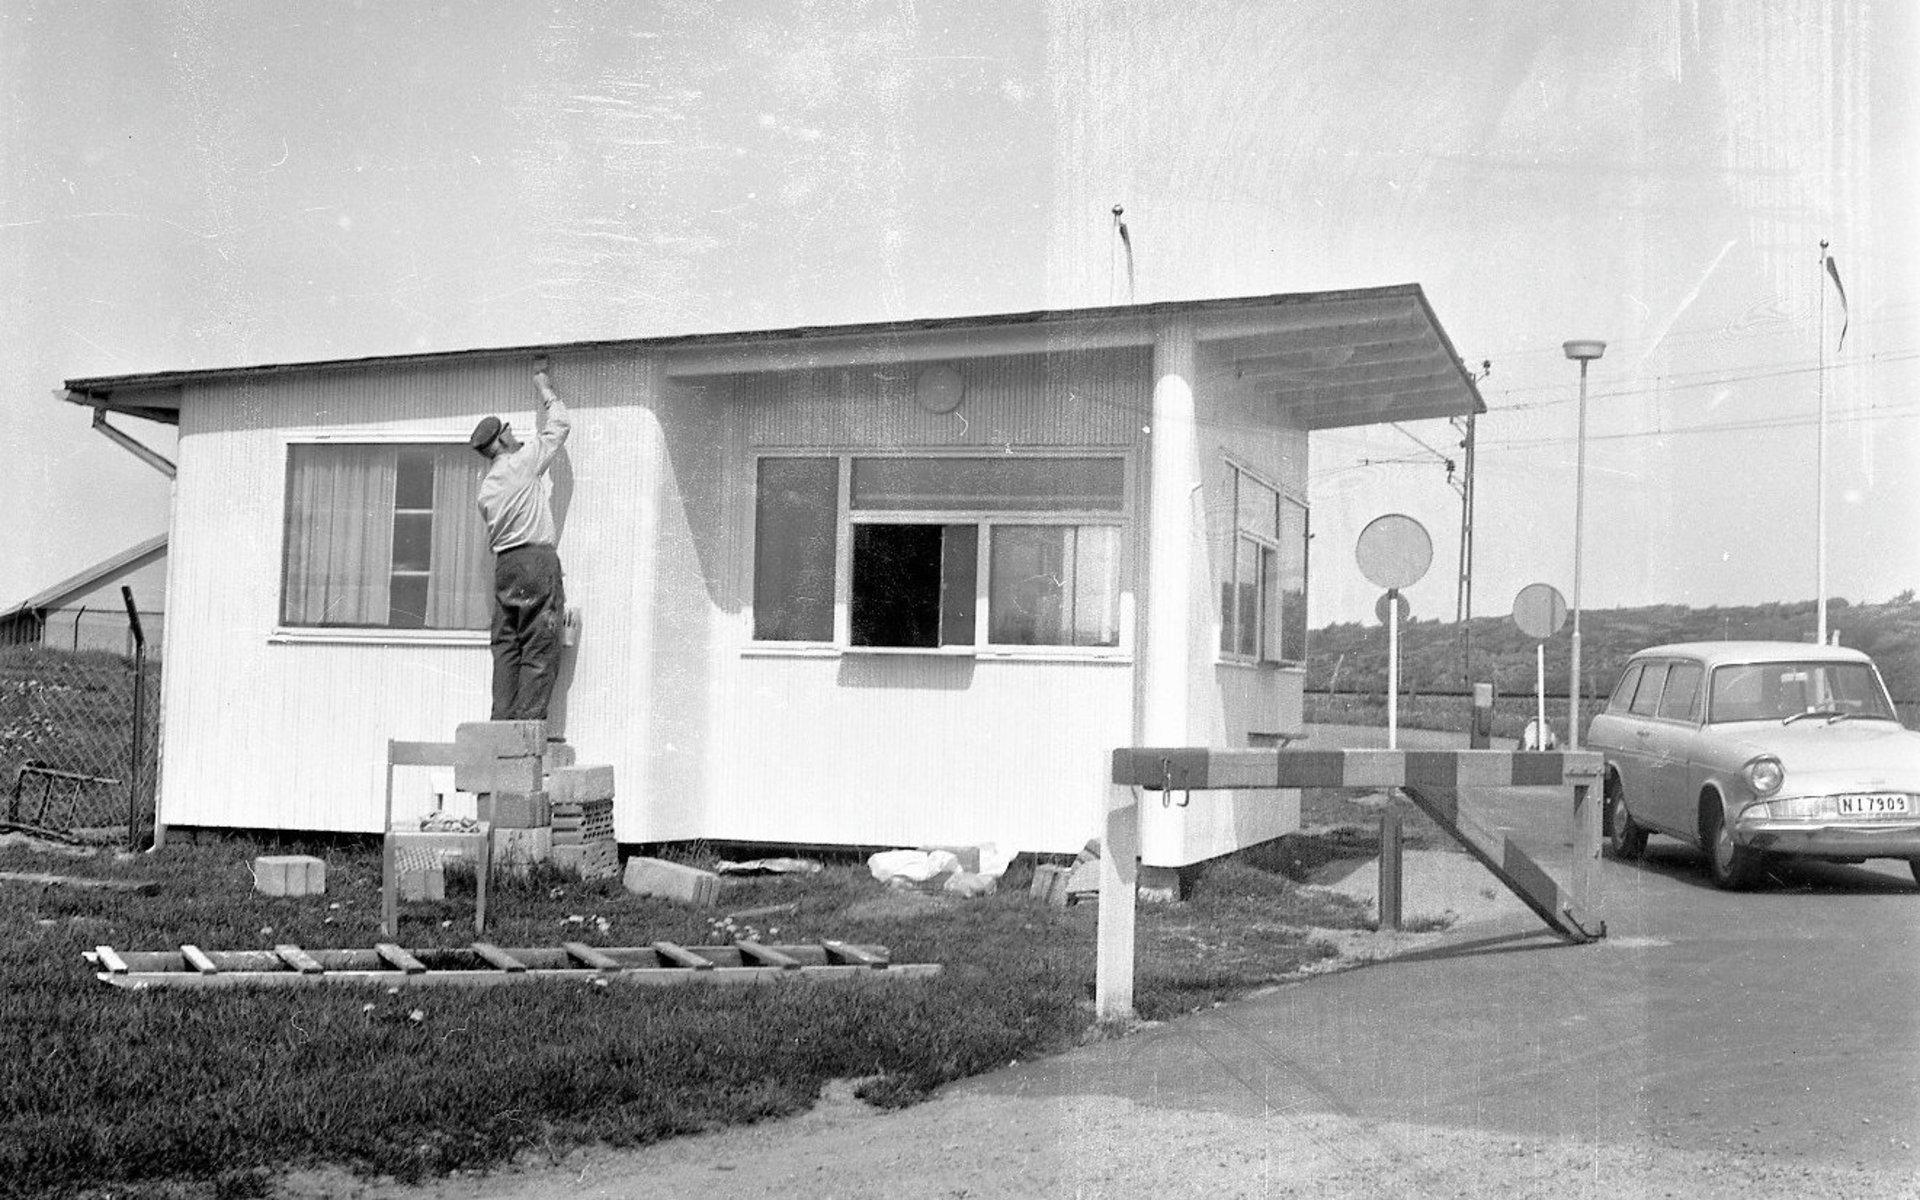 När Pressbyråns kiosk vid stationen hade gjort sitt fick kuren förlängt liv. Den 29 maj 1969 togs bilden när kiosken flyttades till Apelvikens camping som incheckningsplats.